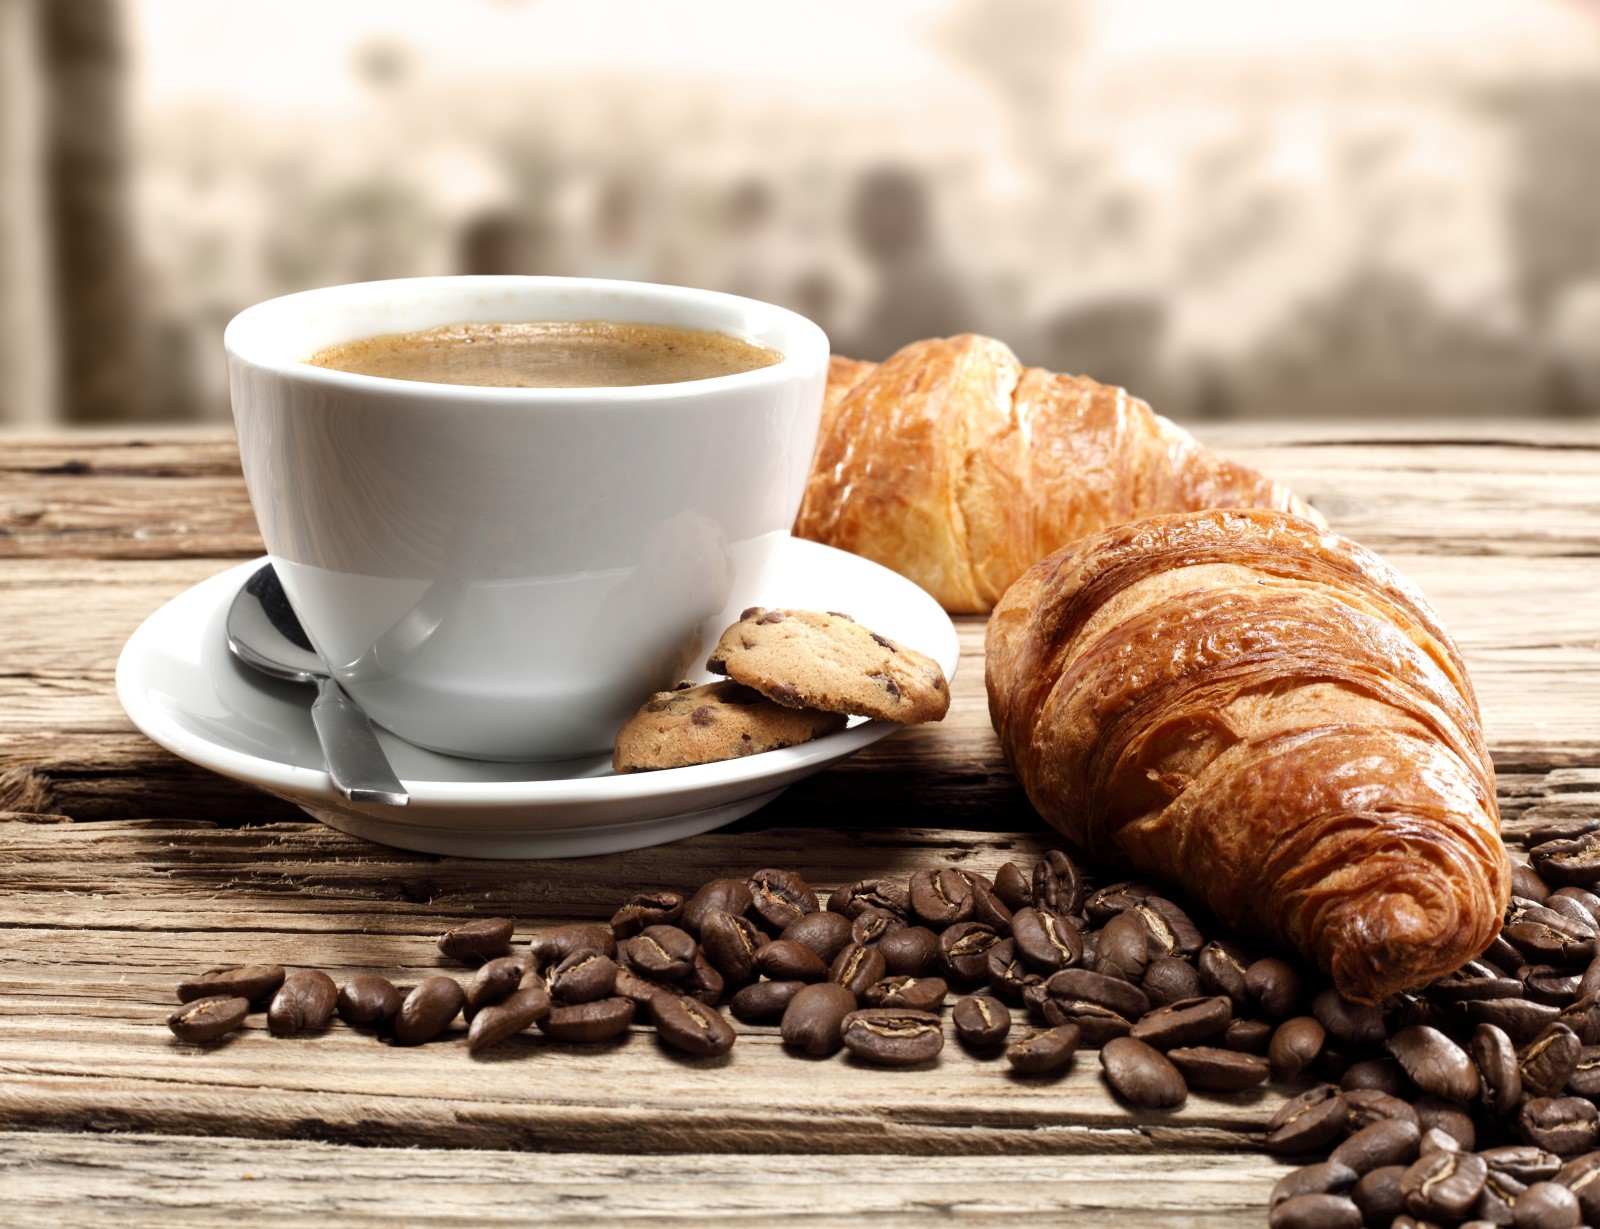 คุ้กกี้, กาแฟ, การเจริญเติบโต, ครัวซองต์, เมล็ดกาแฟ, ขนมปังกรอบ